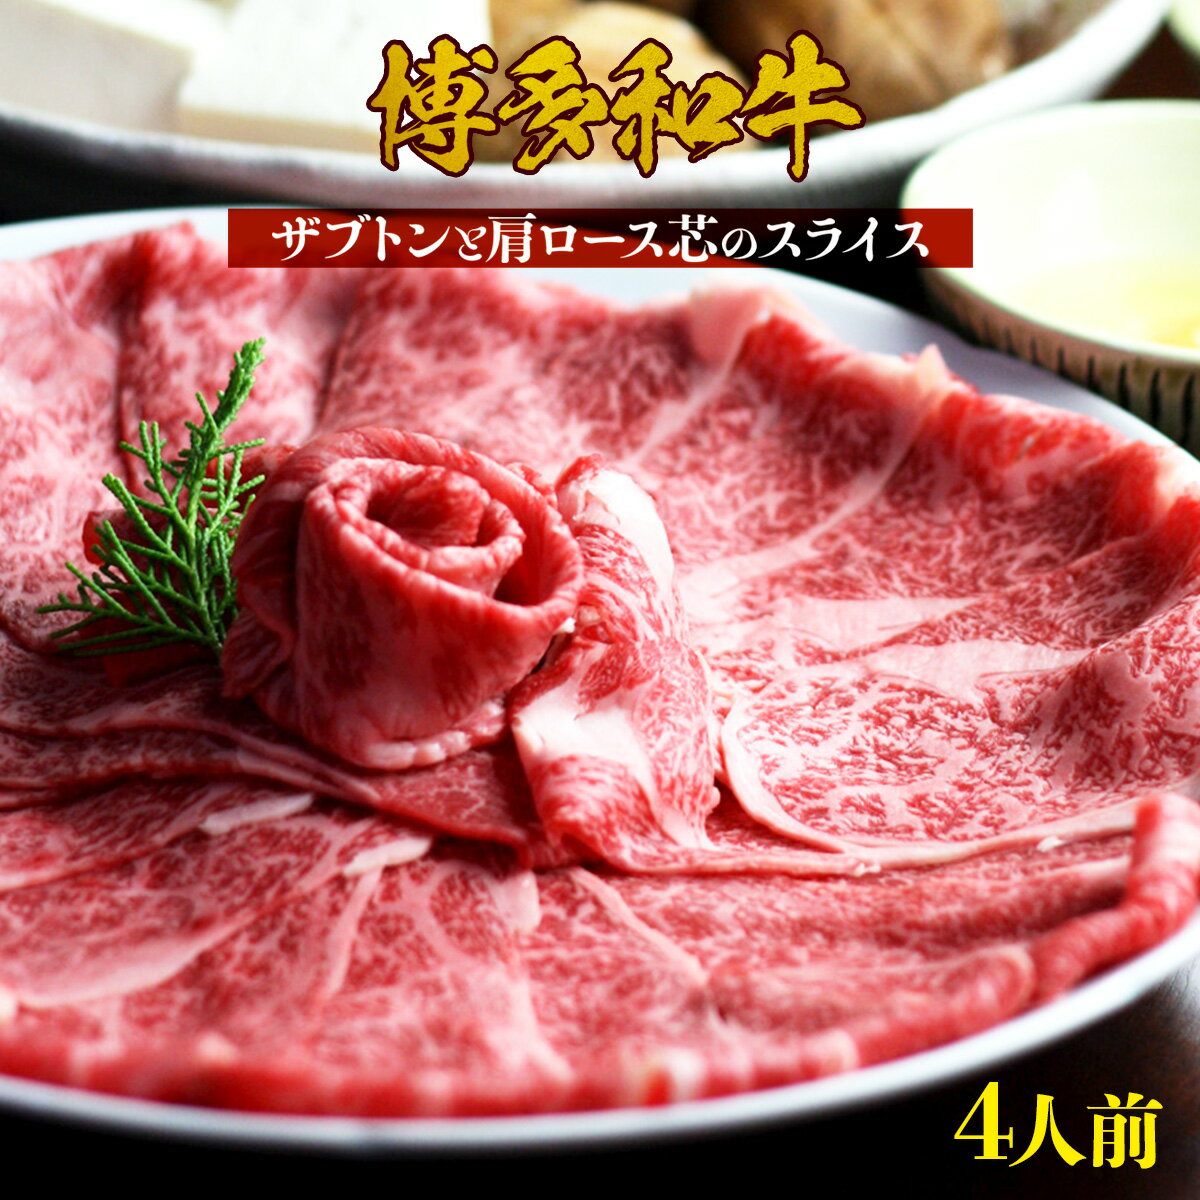 全国お取り寄せグルメ福岡肉・肉加工品No.14